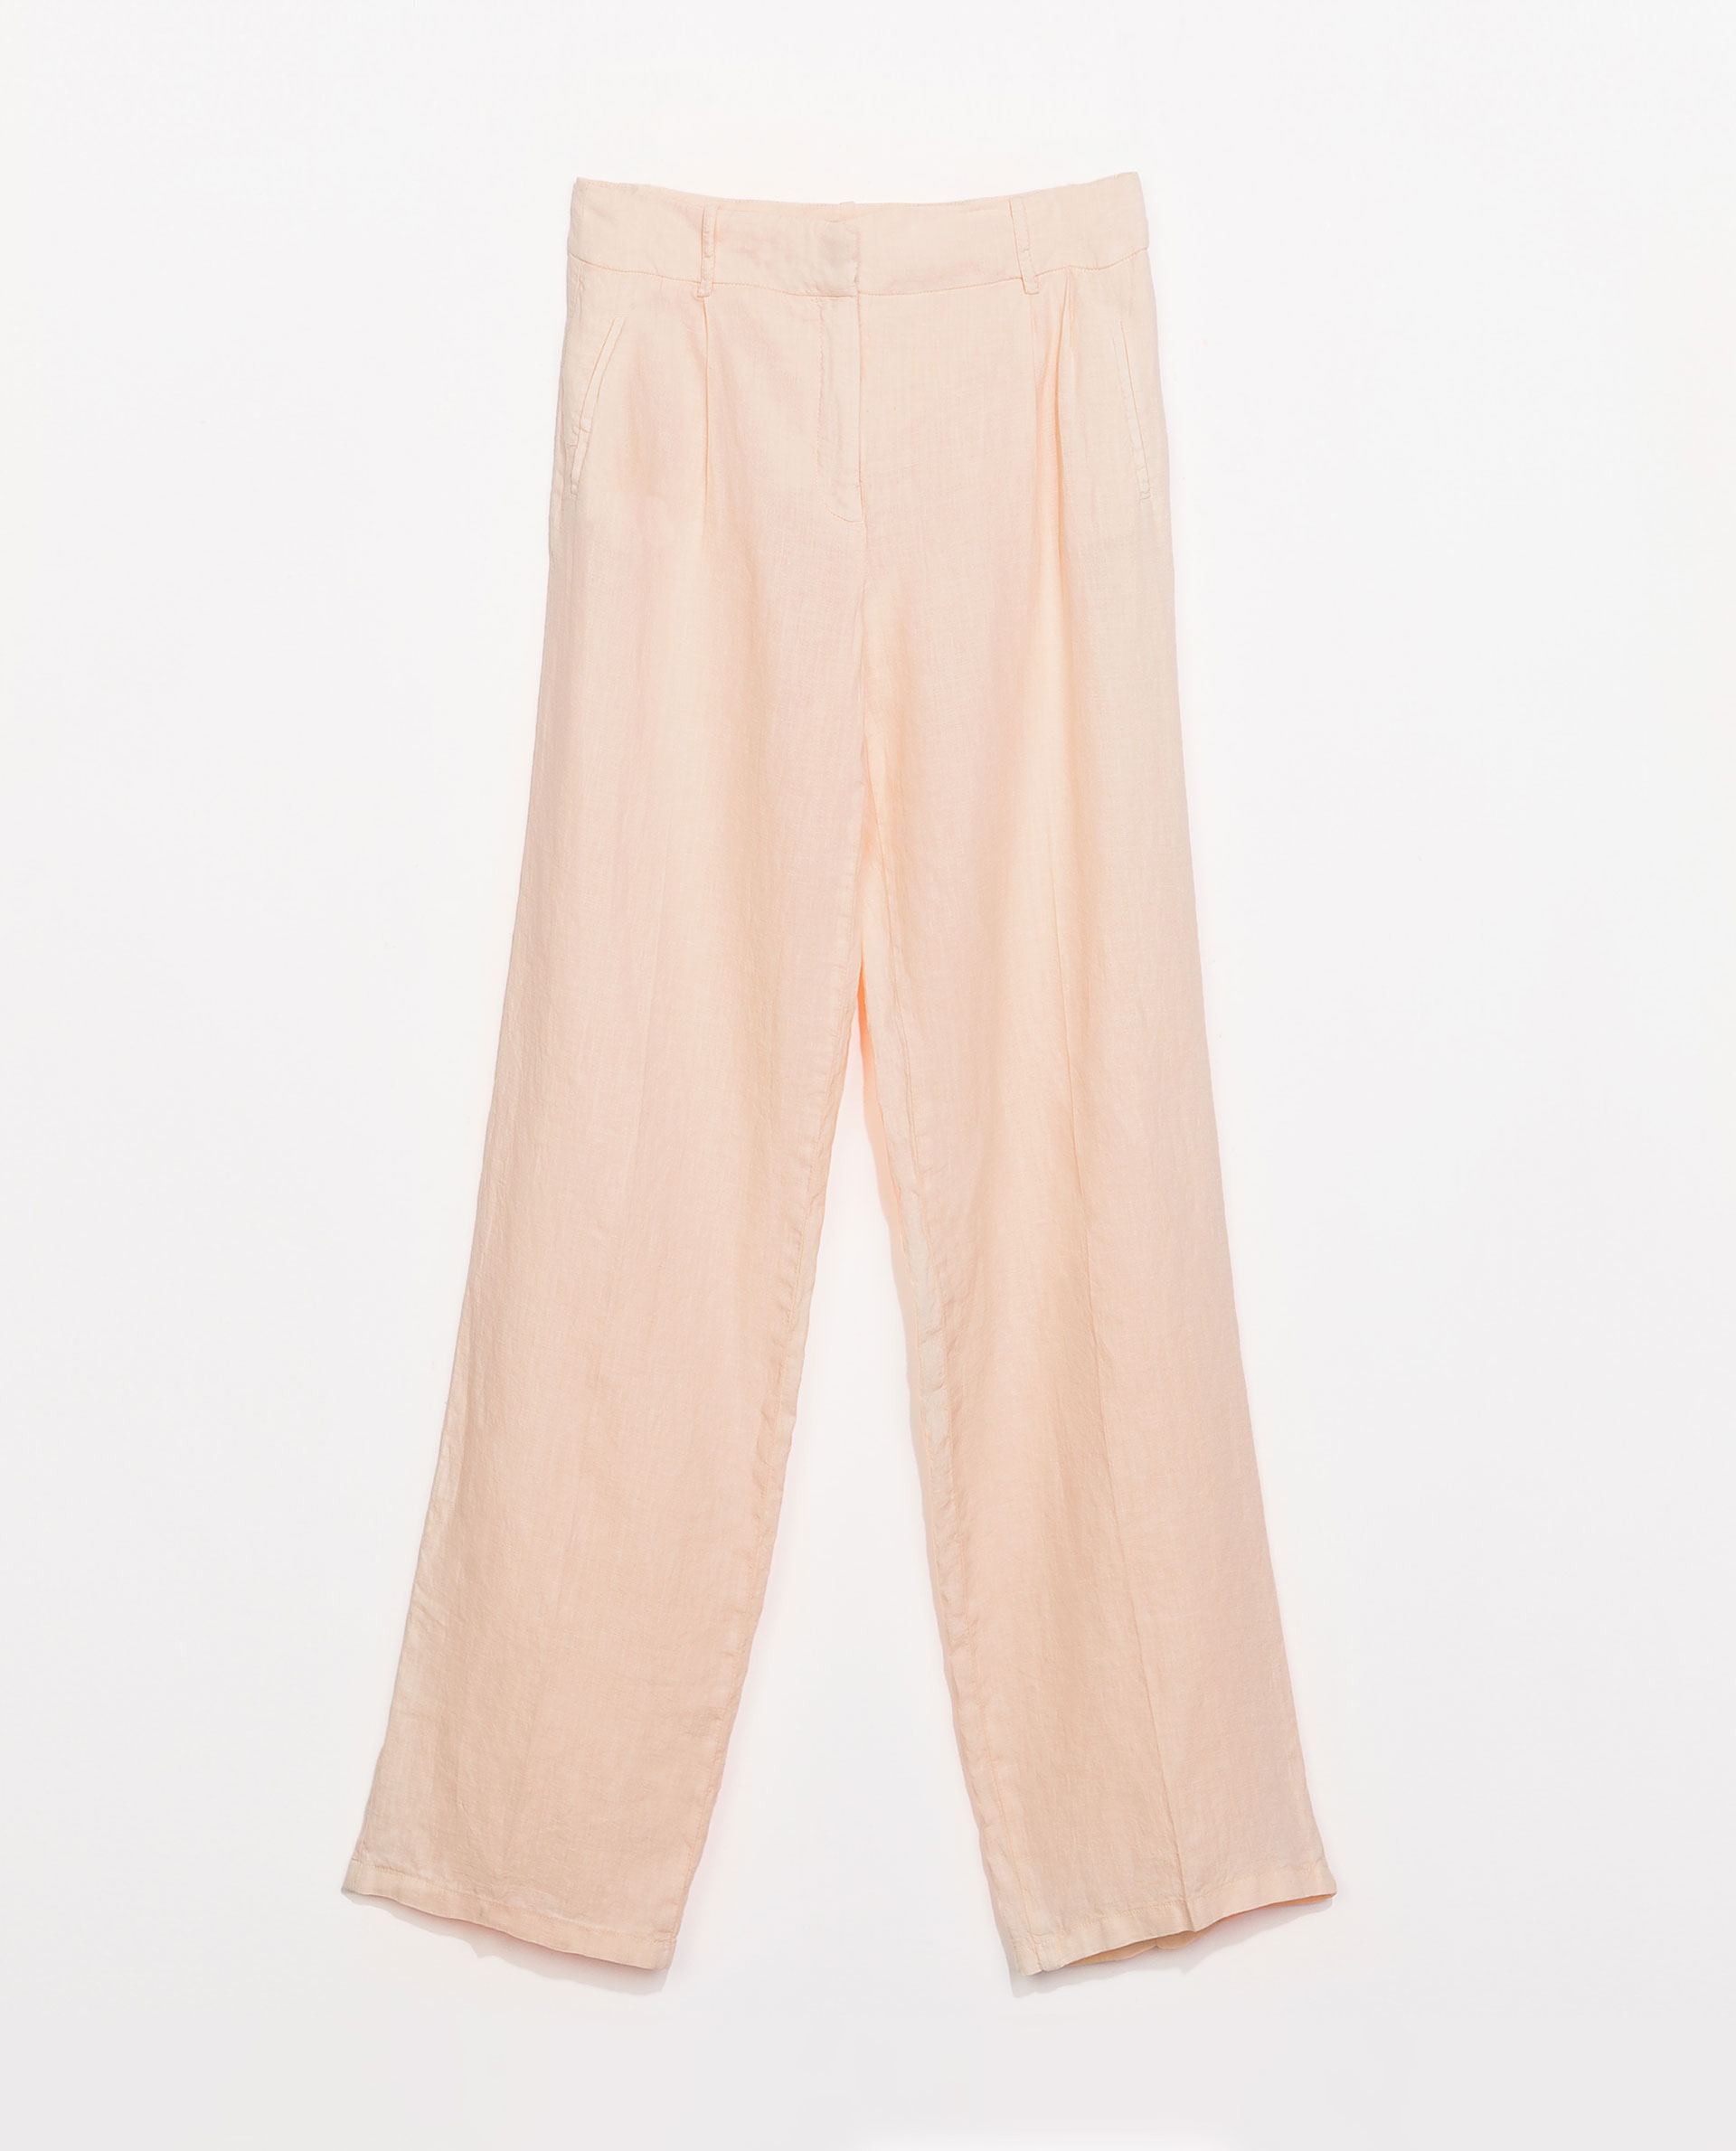 Zara Pleat Front Linen Trousers in Pink (Peach) | Lyst